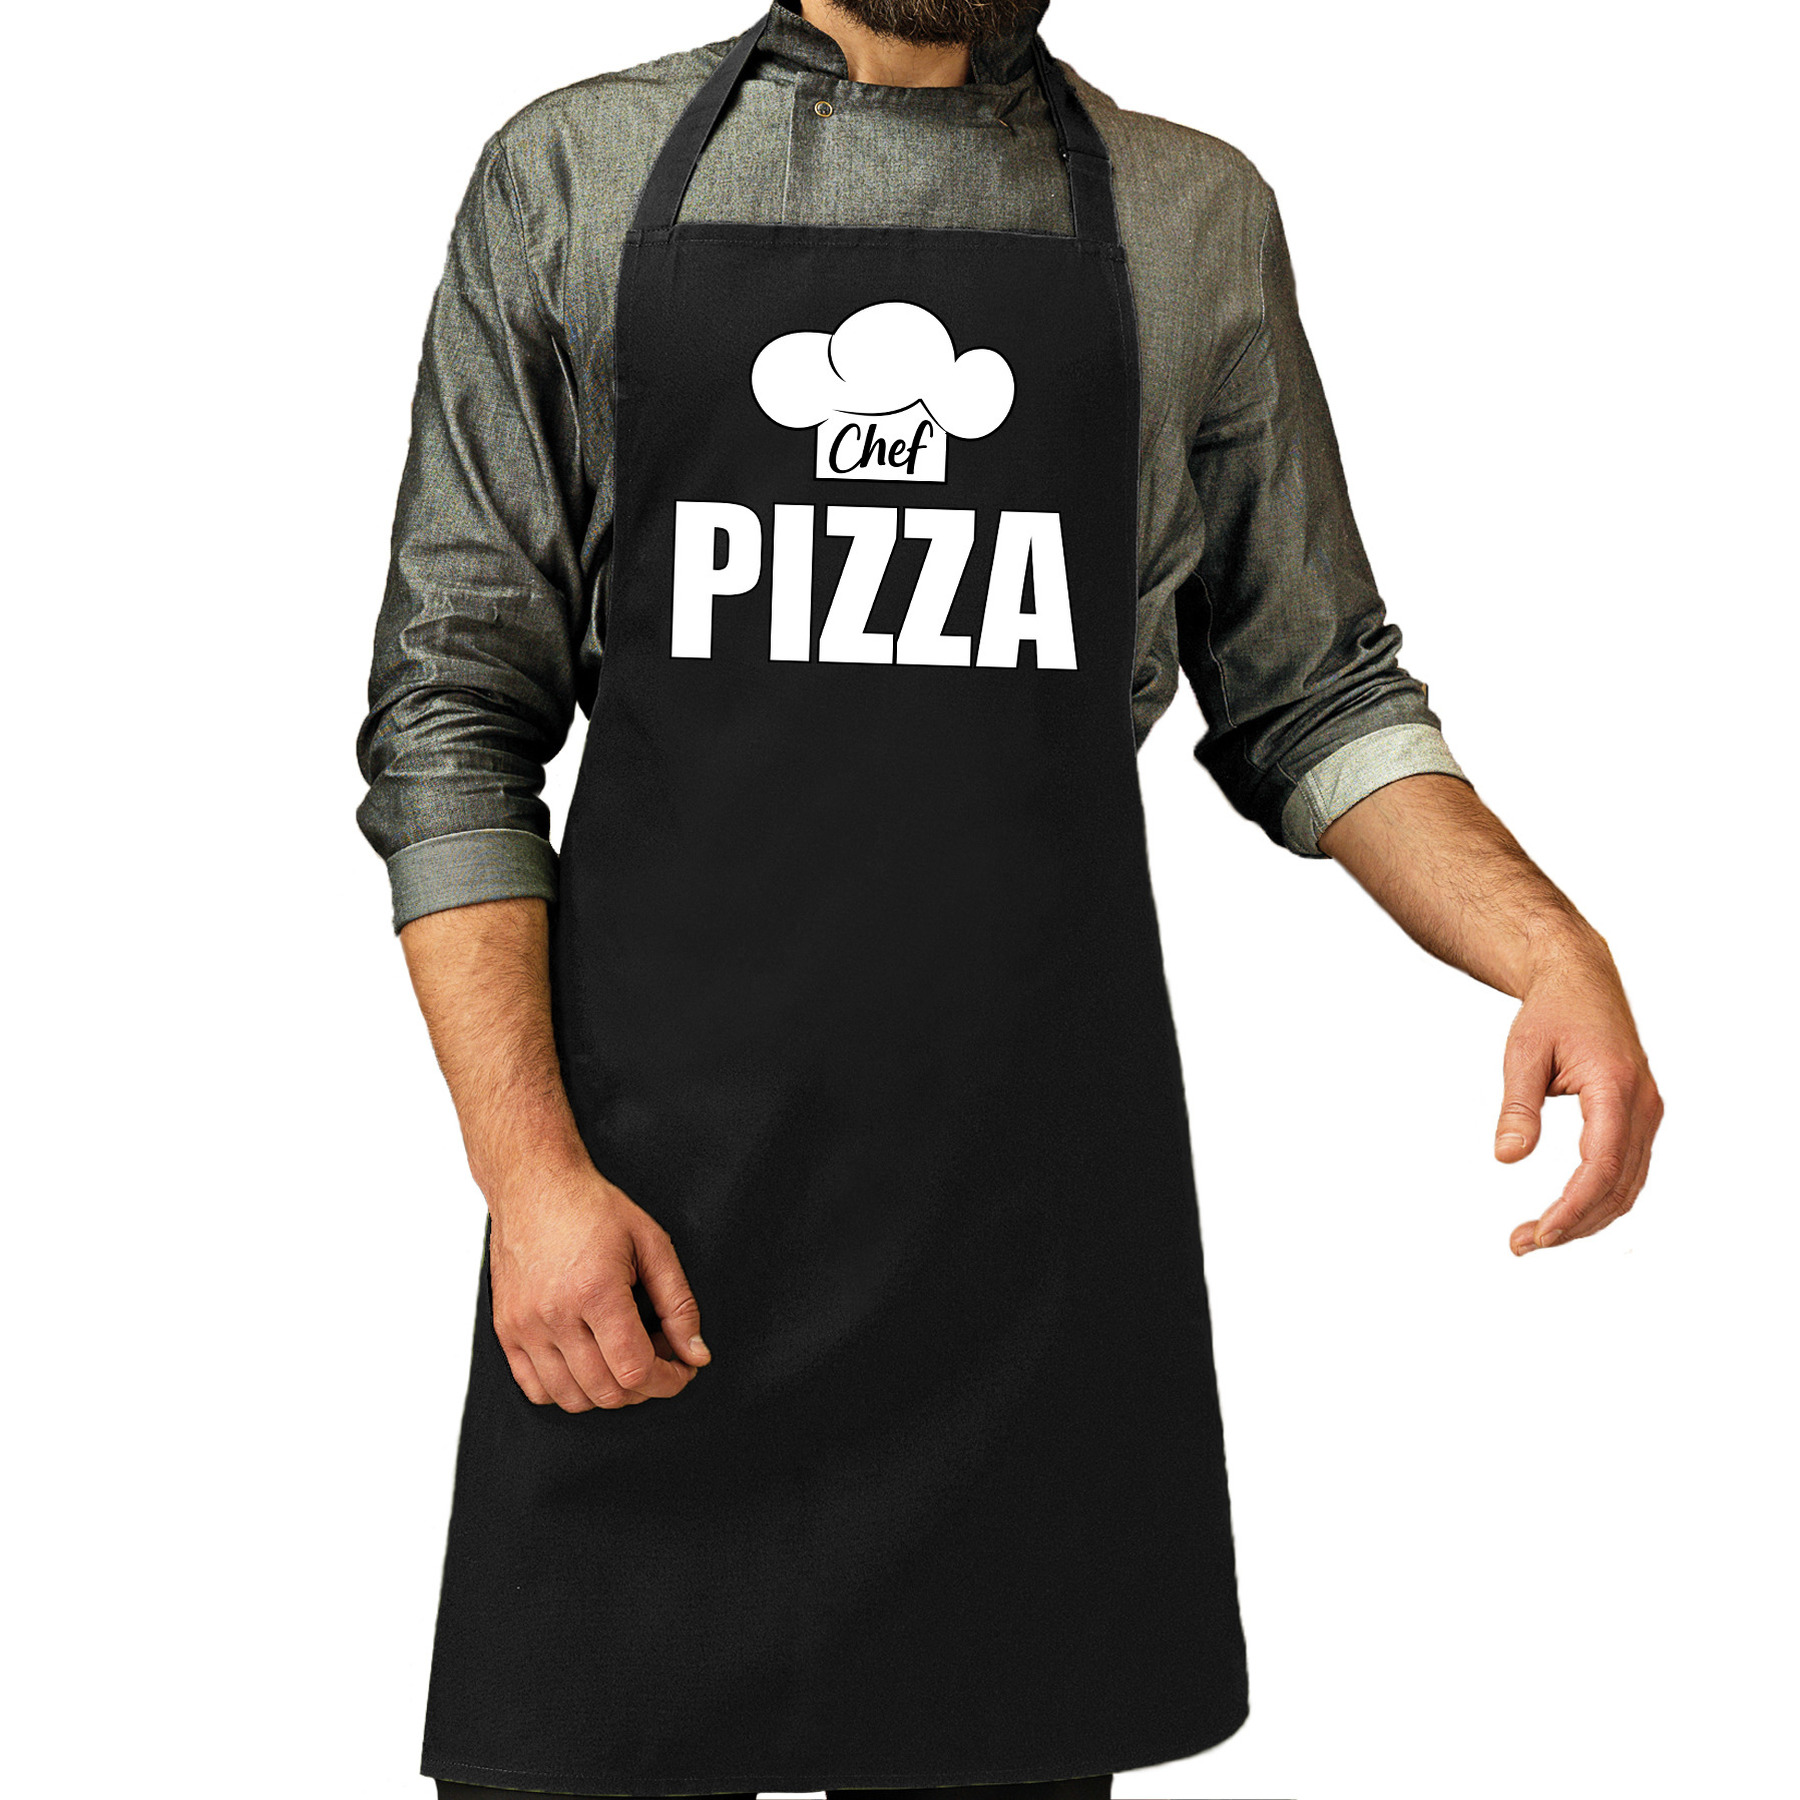 Chef pizza schort-keukenschort zwart heren